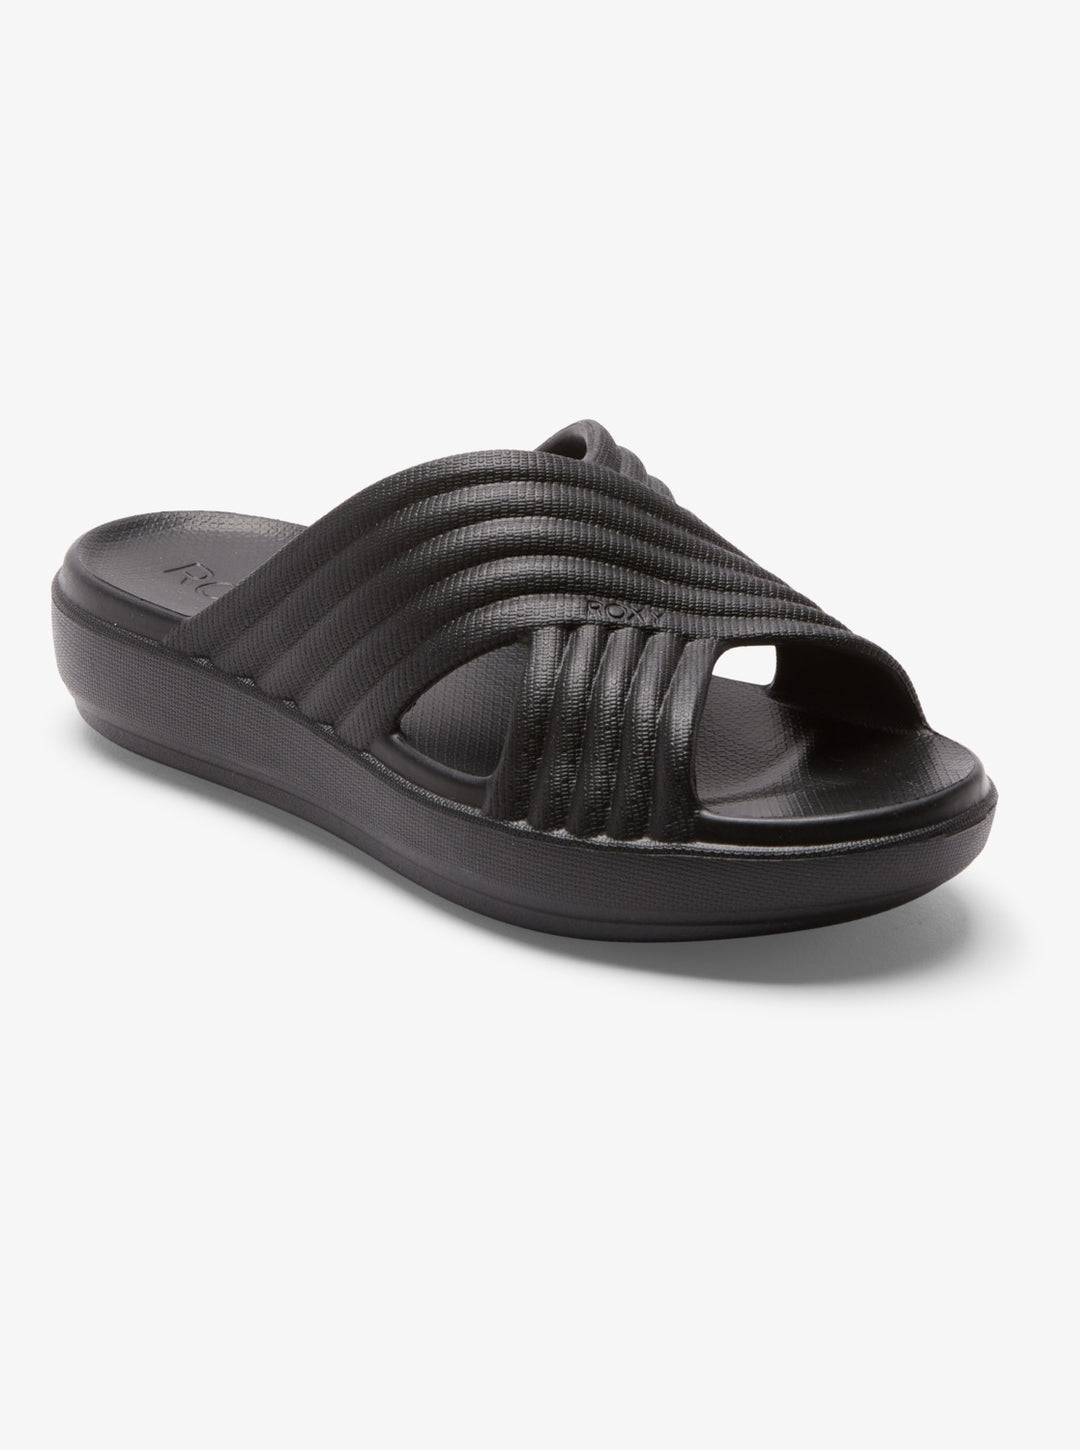 Roxy Rivie Sandals - Black - Sun Diego Boardshop